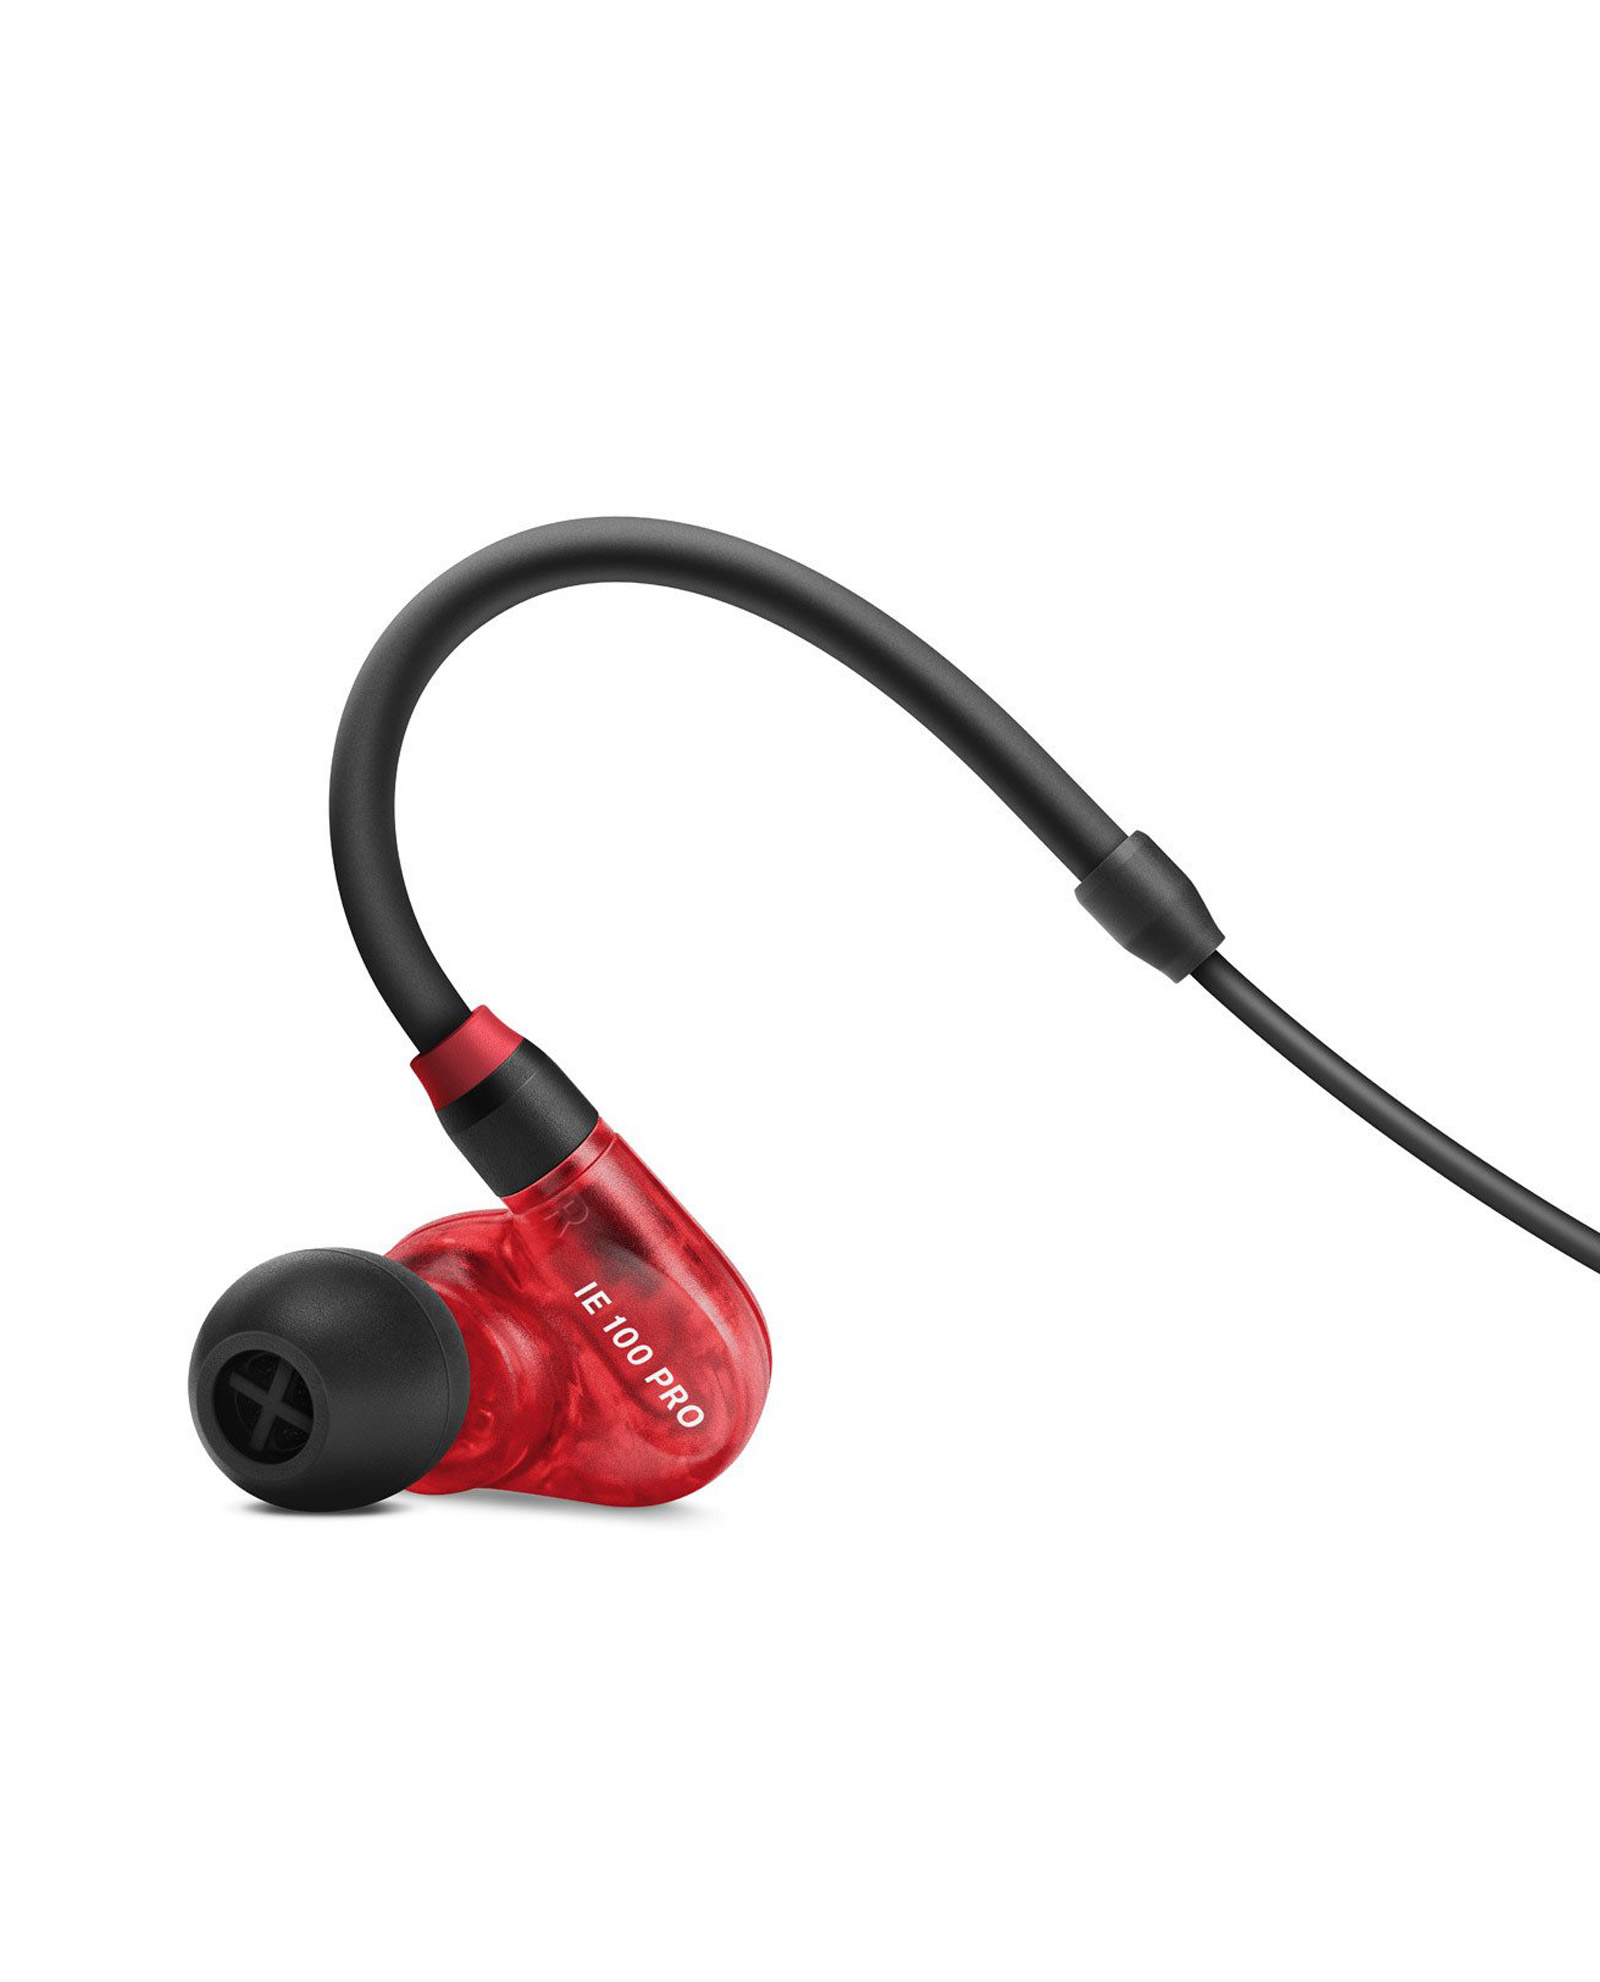 In-ear monitoring IE 100 Pro